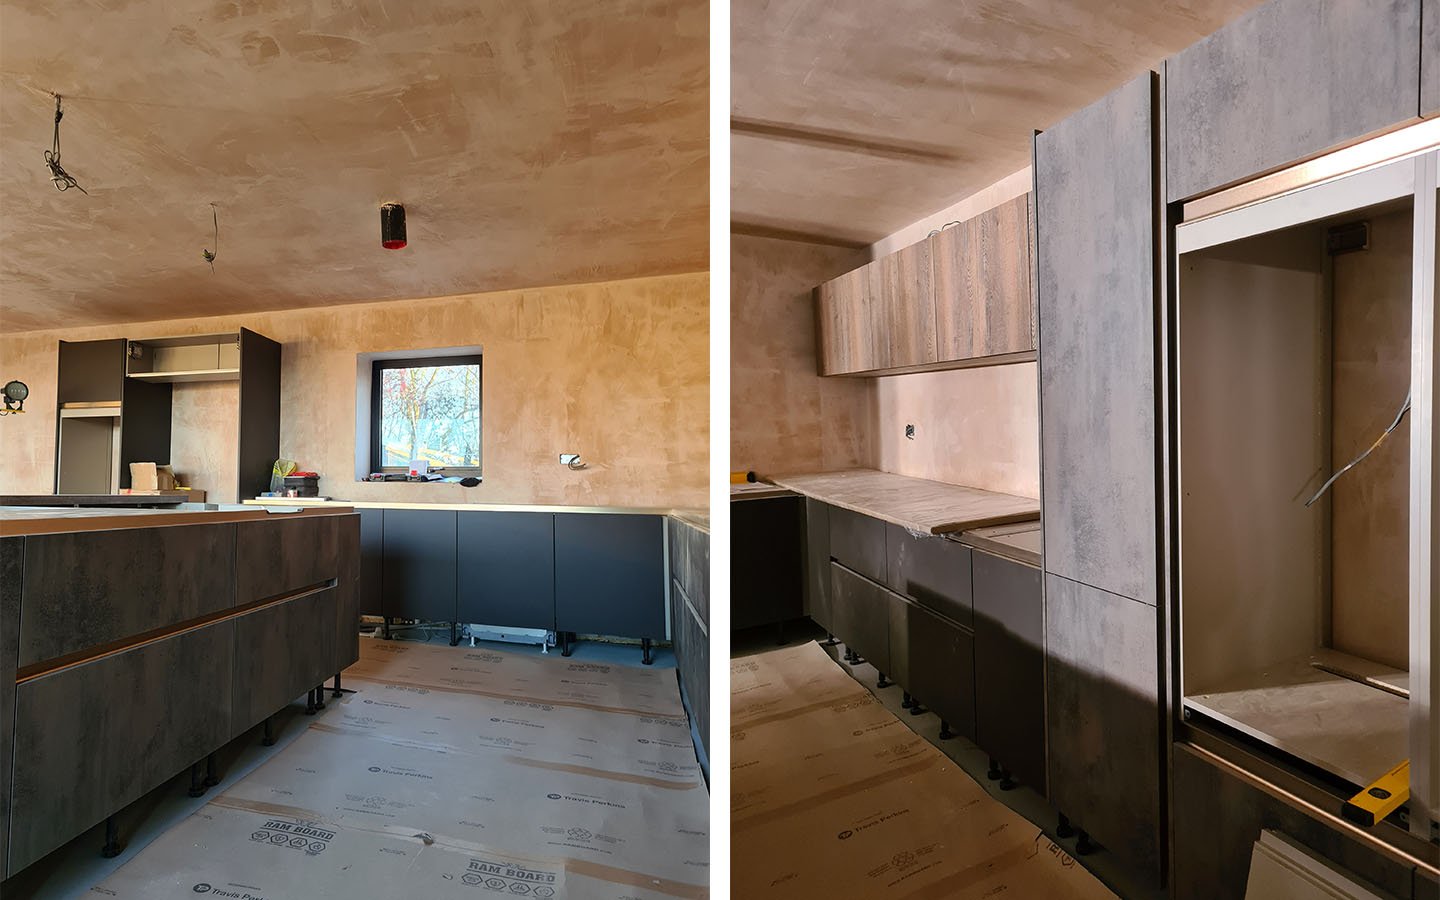 Kitchen transformation plastered walls